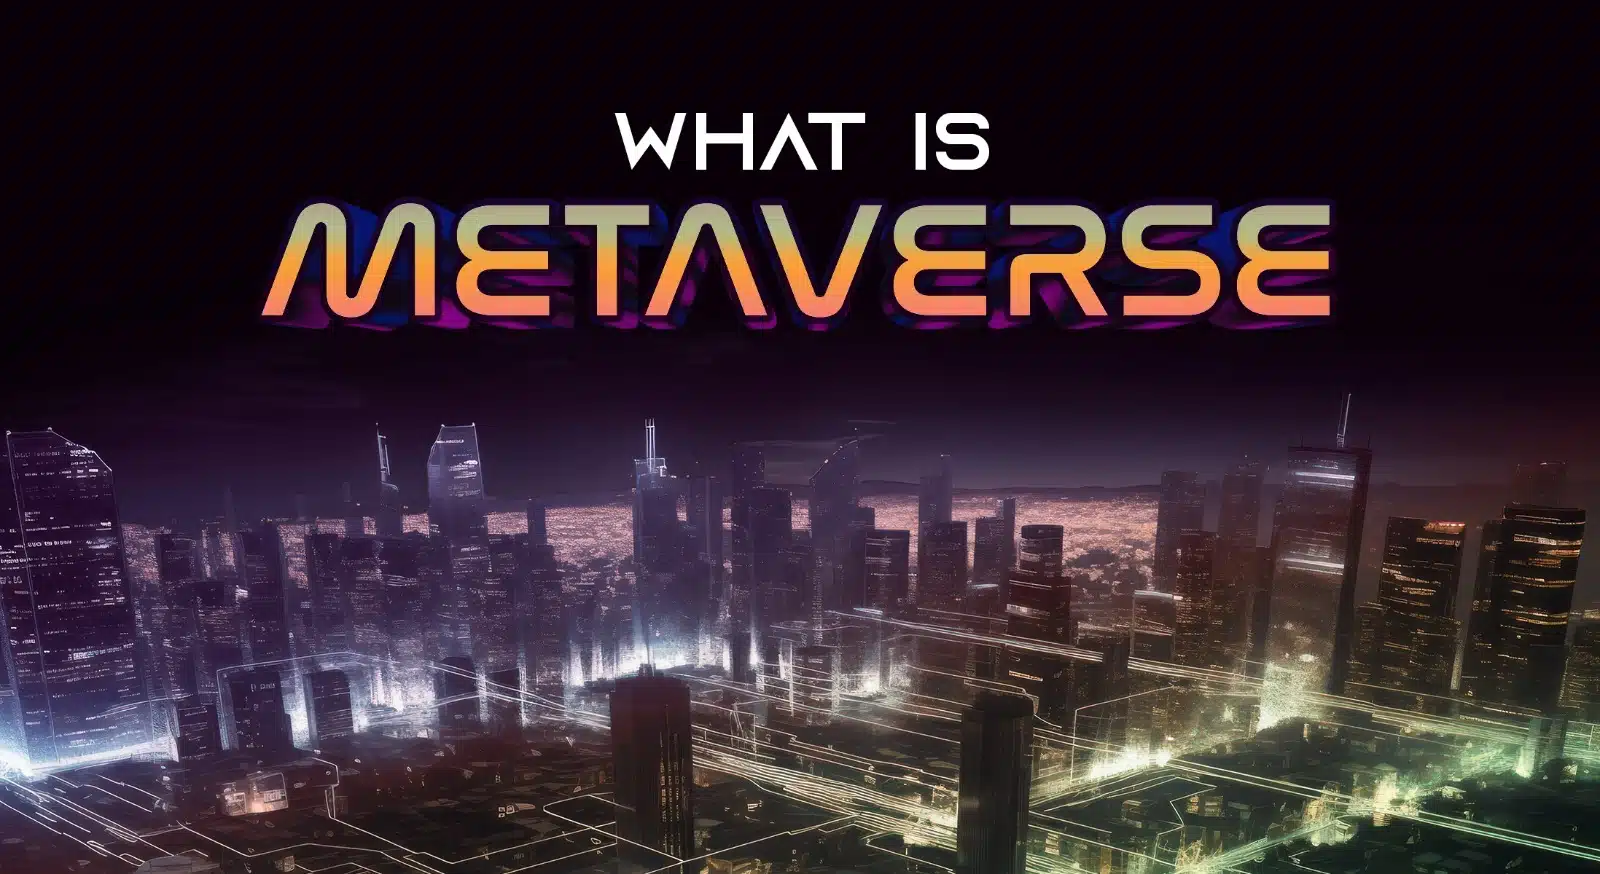 这张图片上方有“WHAT IS METAVERSE”字样，背景是夜晚灯光闪烁的虚拟城市景象，展现了数字世界的概念。